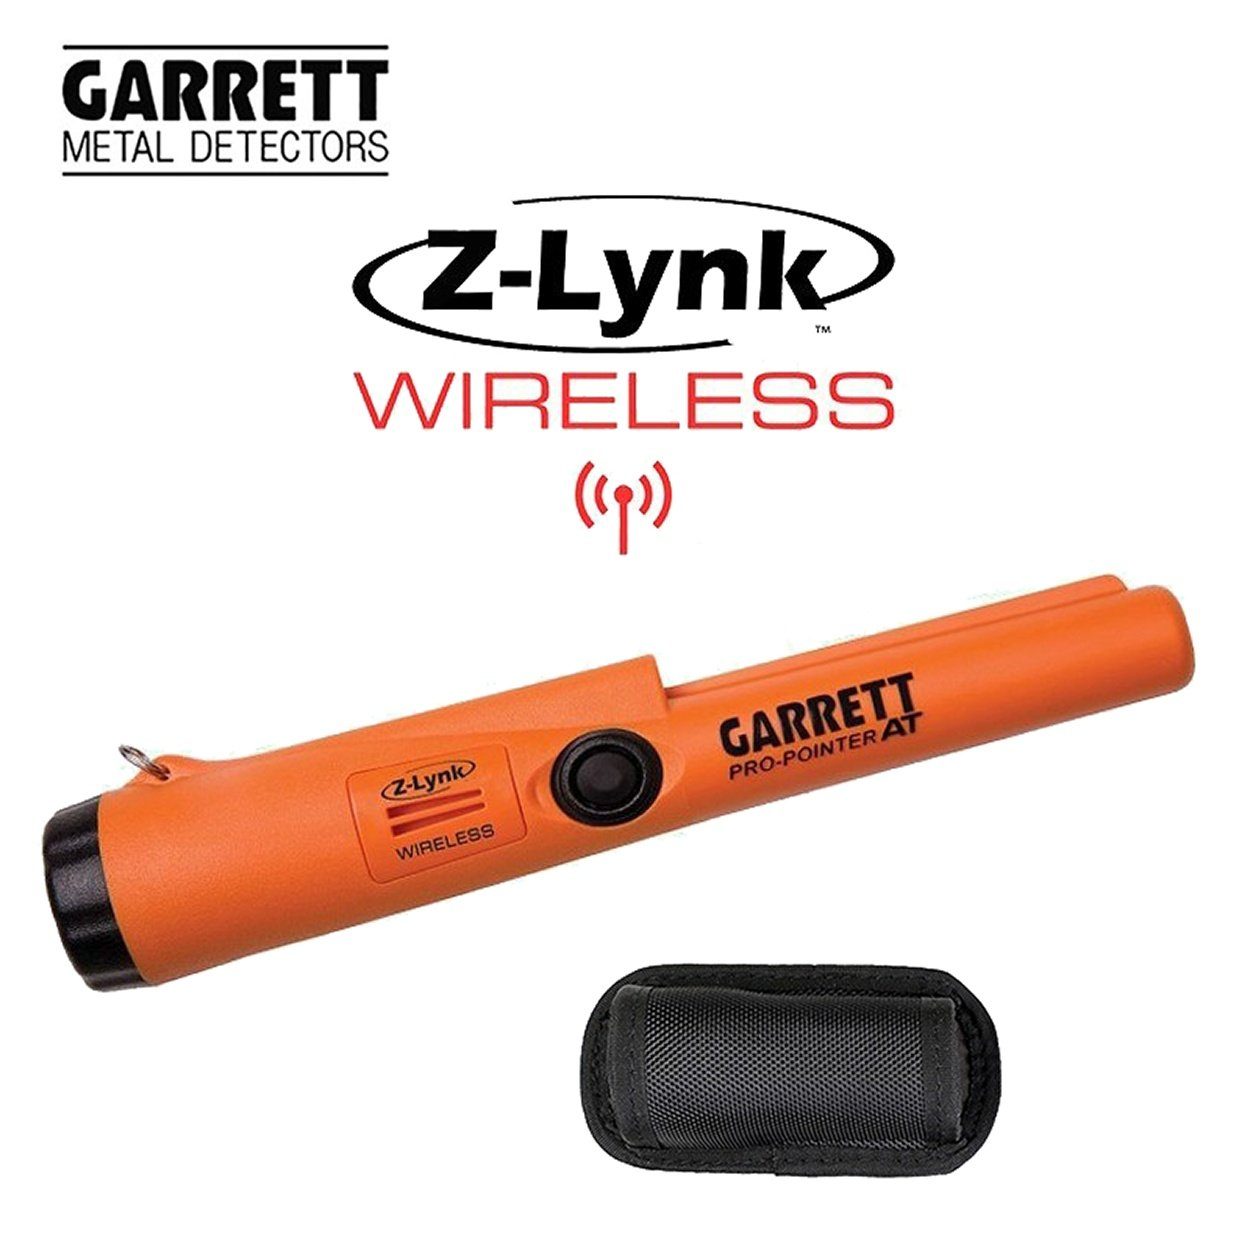 Garrett Metalldetektor Pro Pointer AT Z-Lynk Wireless Pinpointer, Wasserdicht